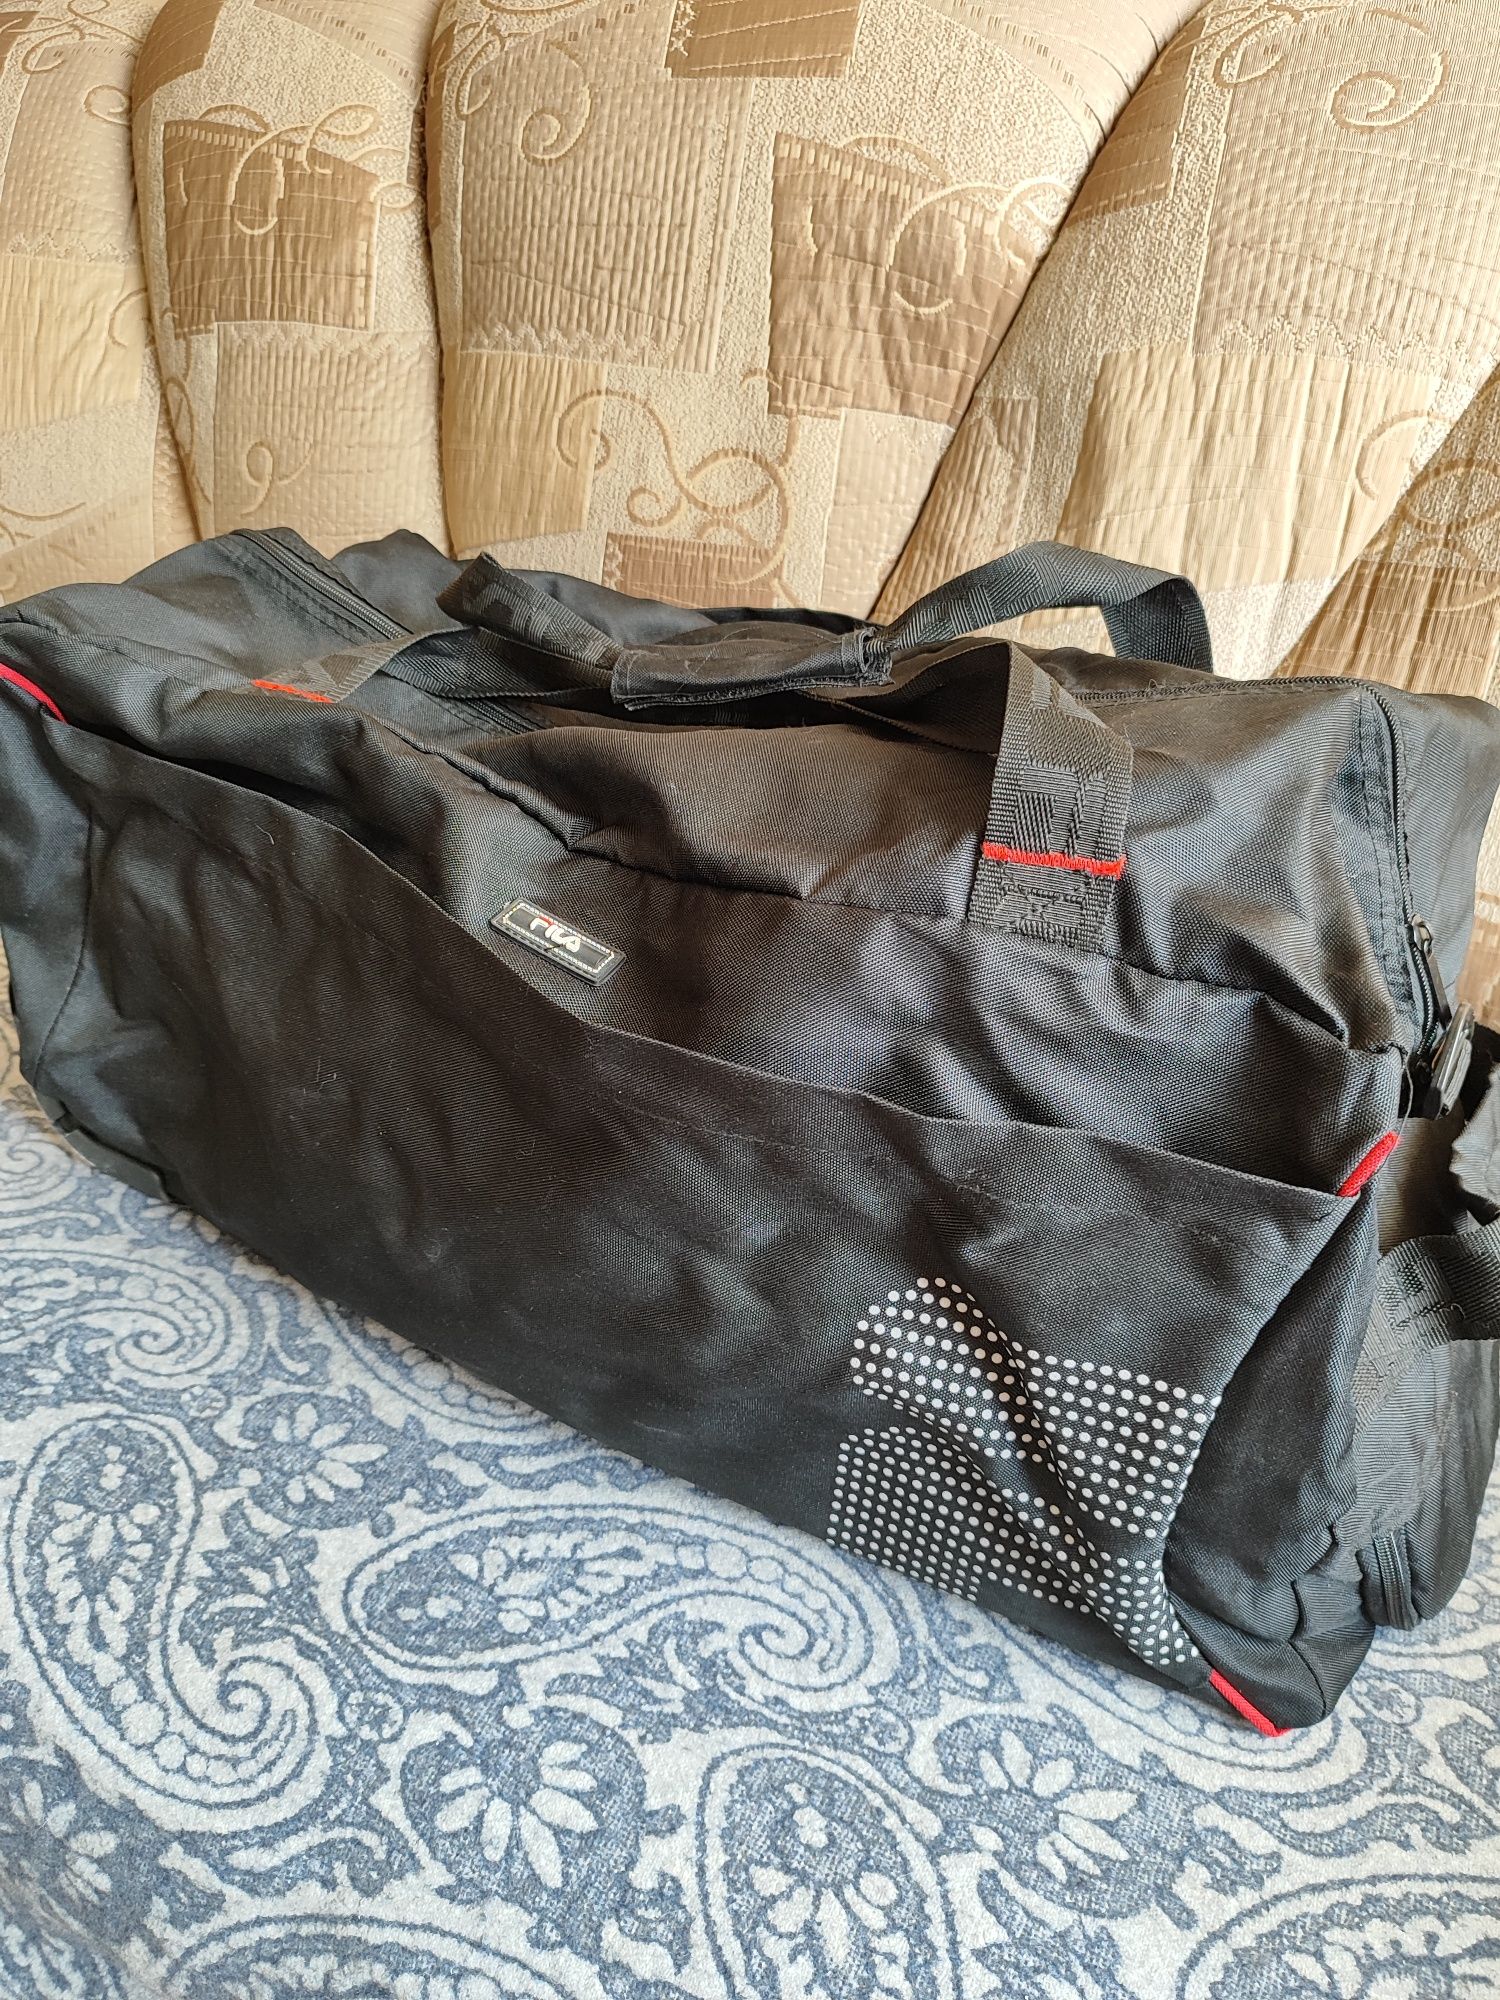 сумки дорожние,спортивние ,большие,рюкзак-вещьмешок большой более